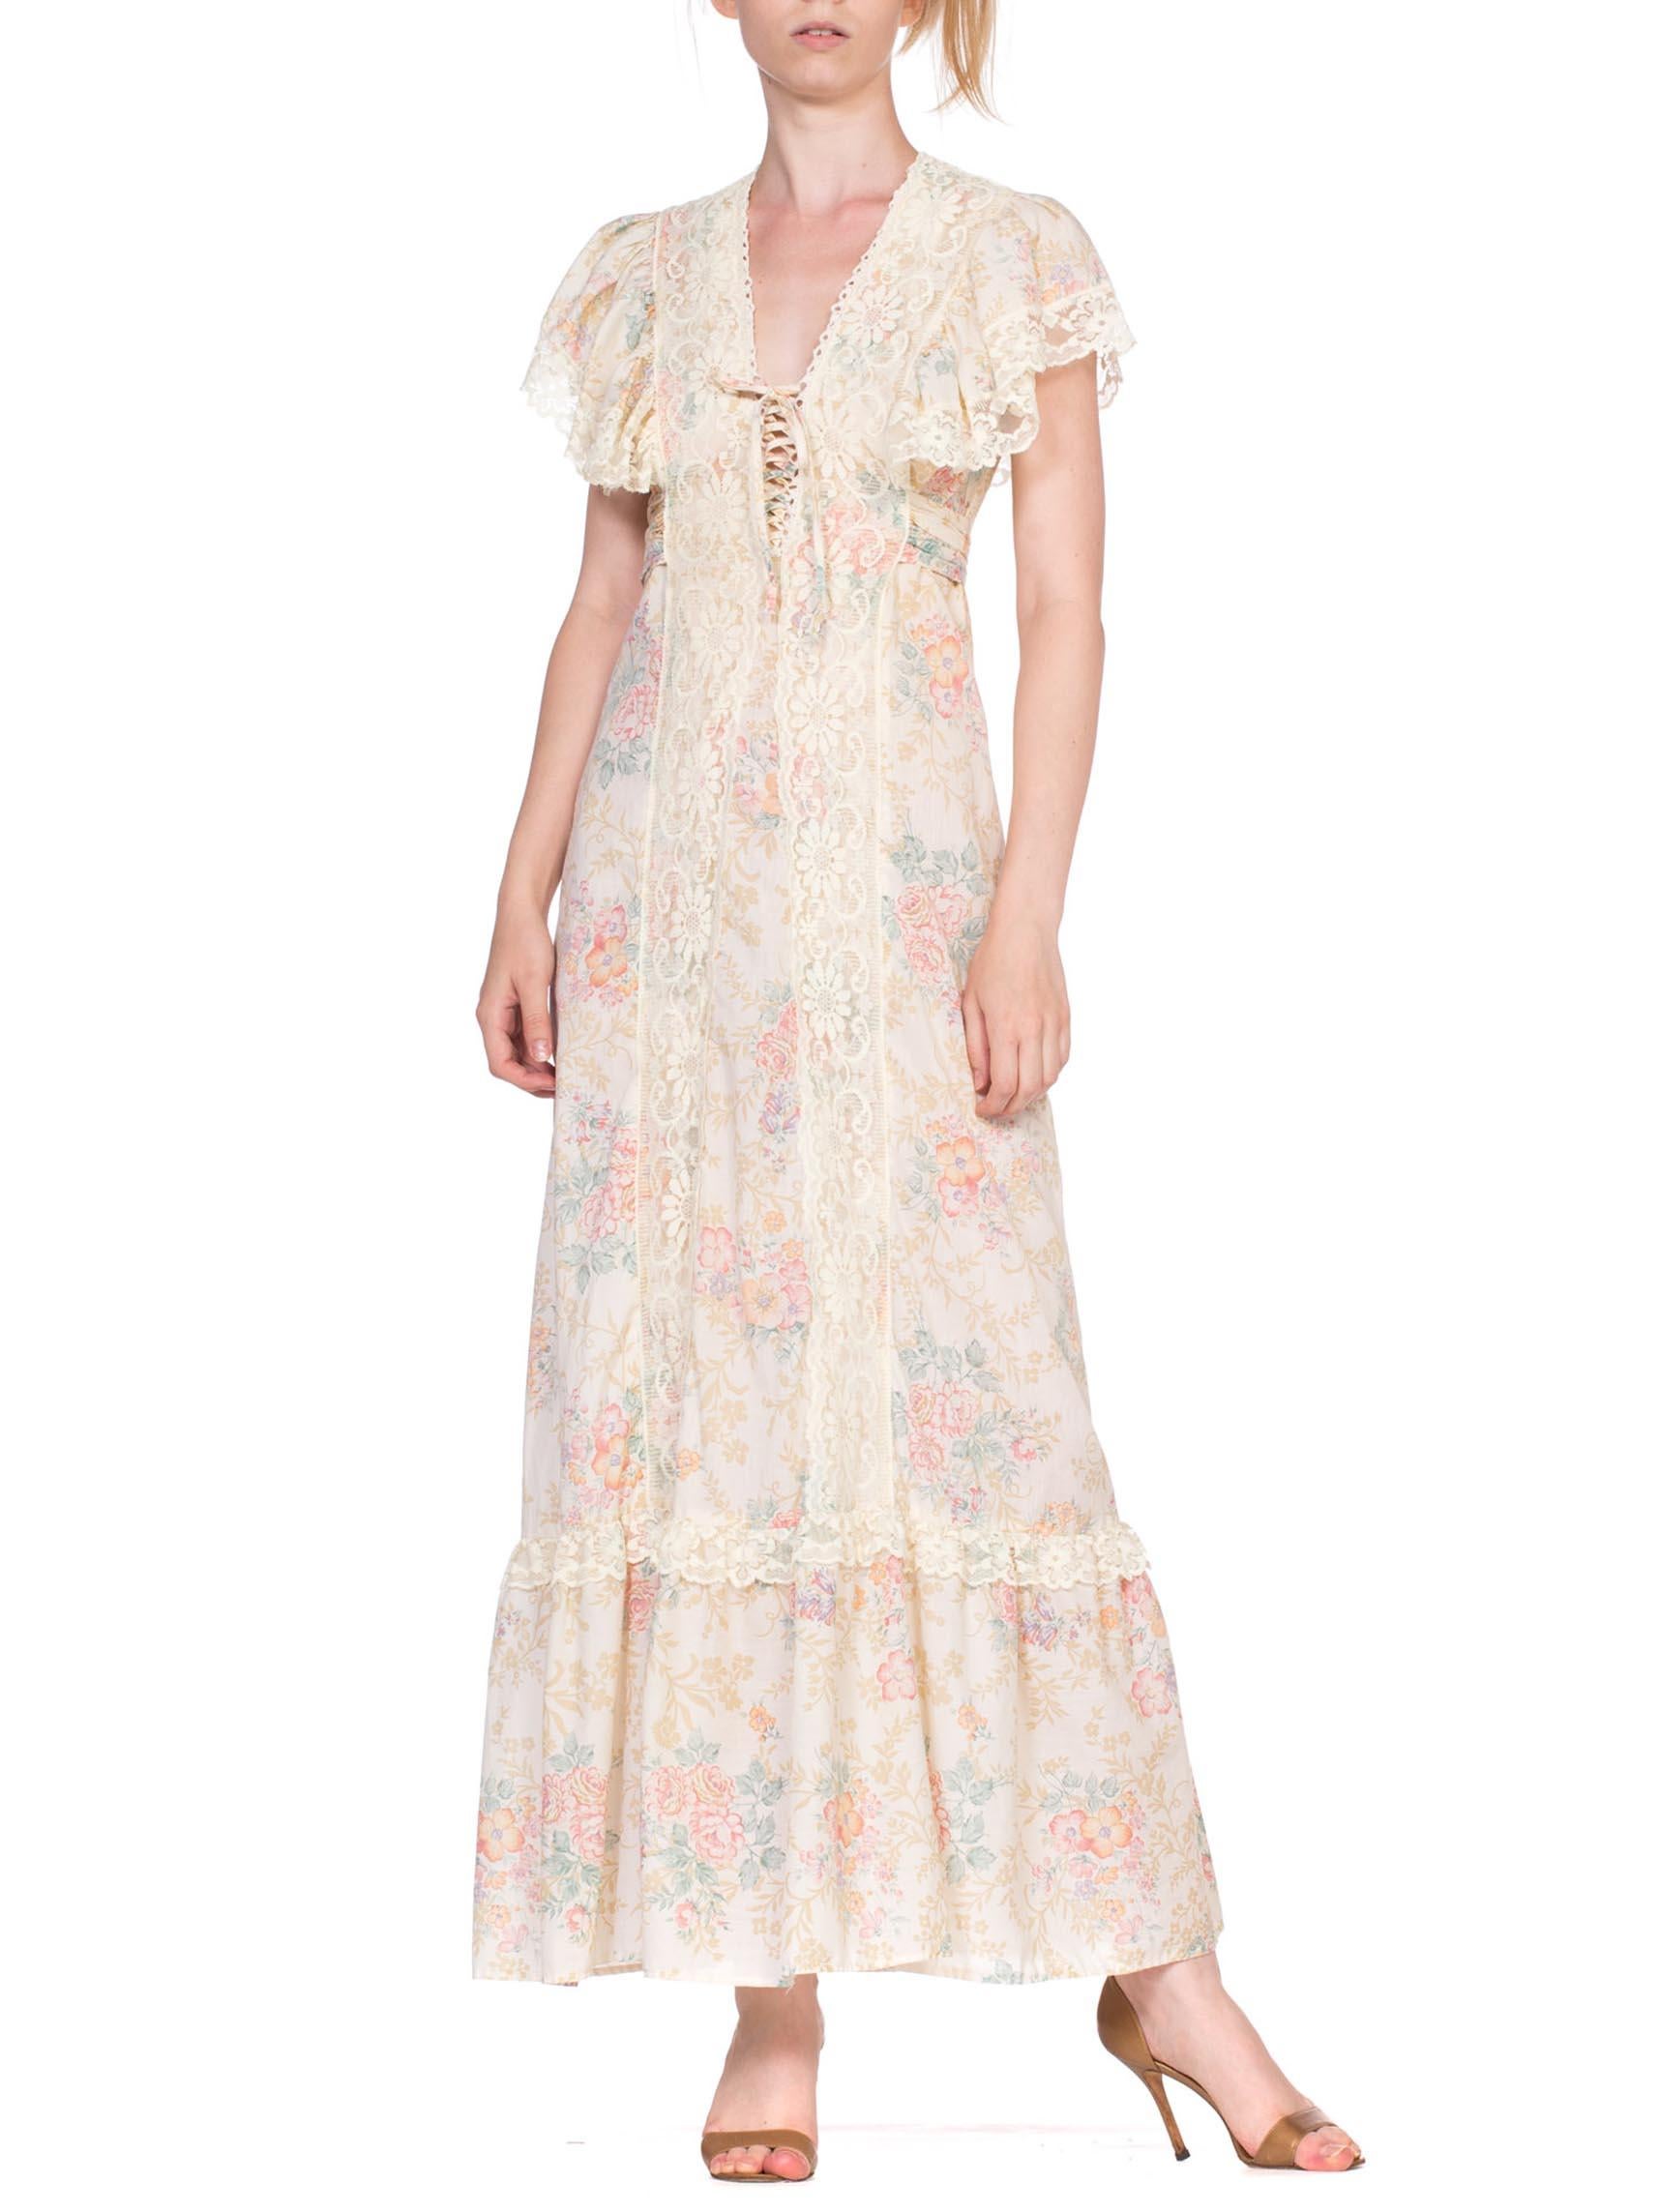 1970's Victorian Floral Cotton & Lace Dress 1